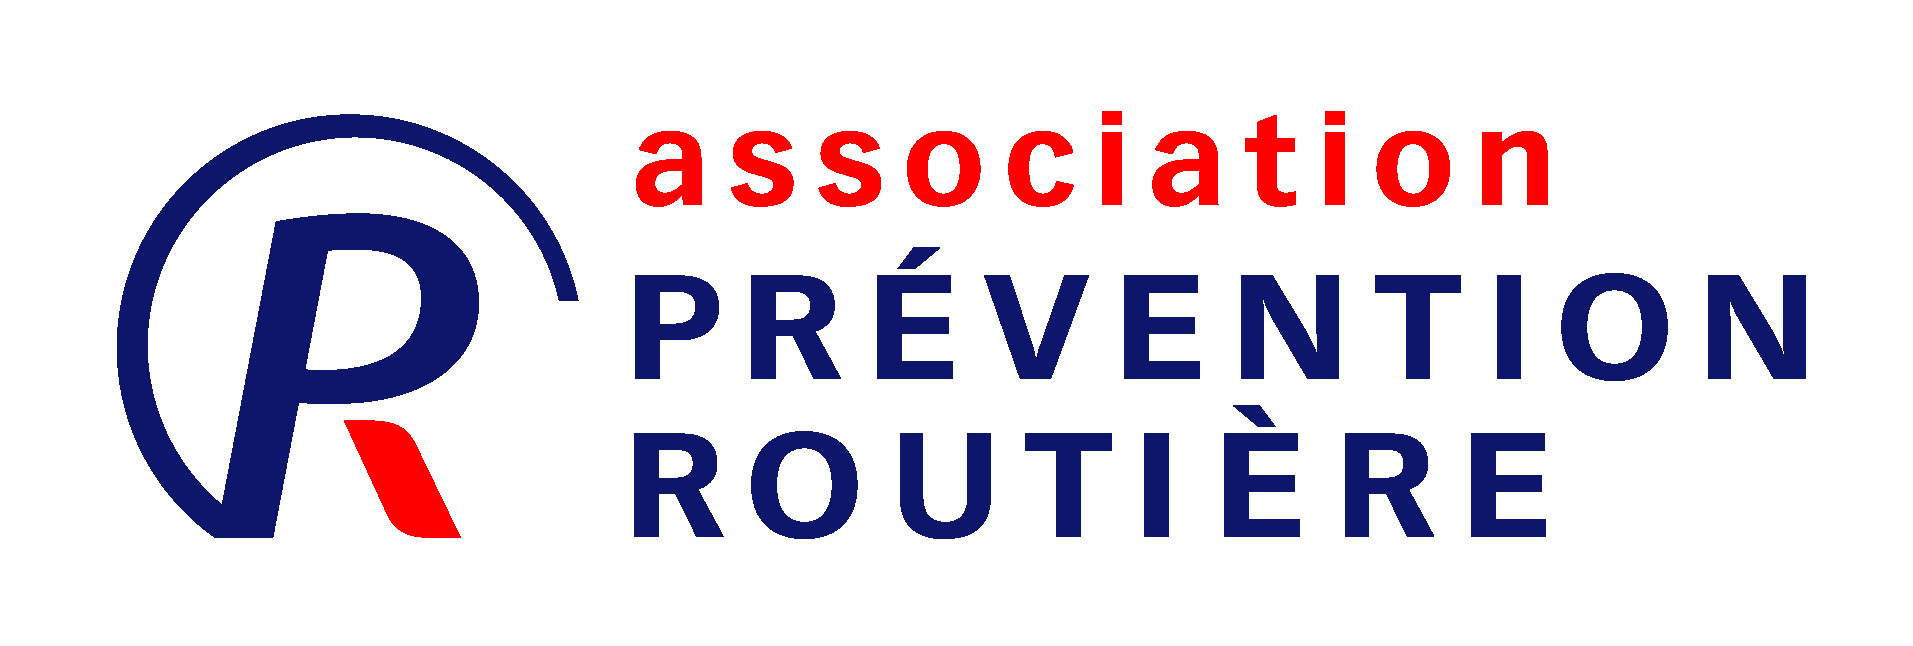 prevention routiere